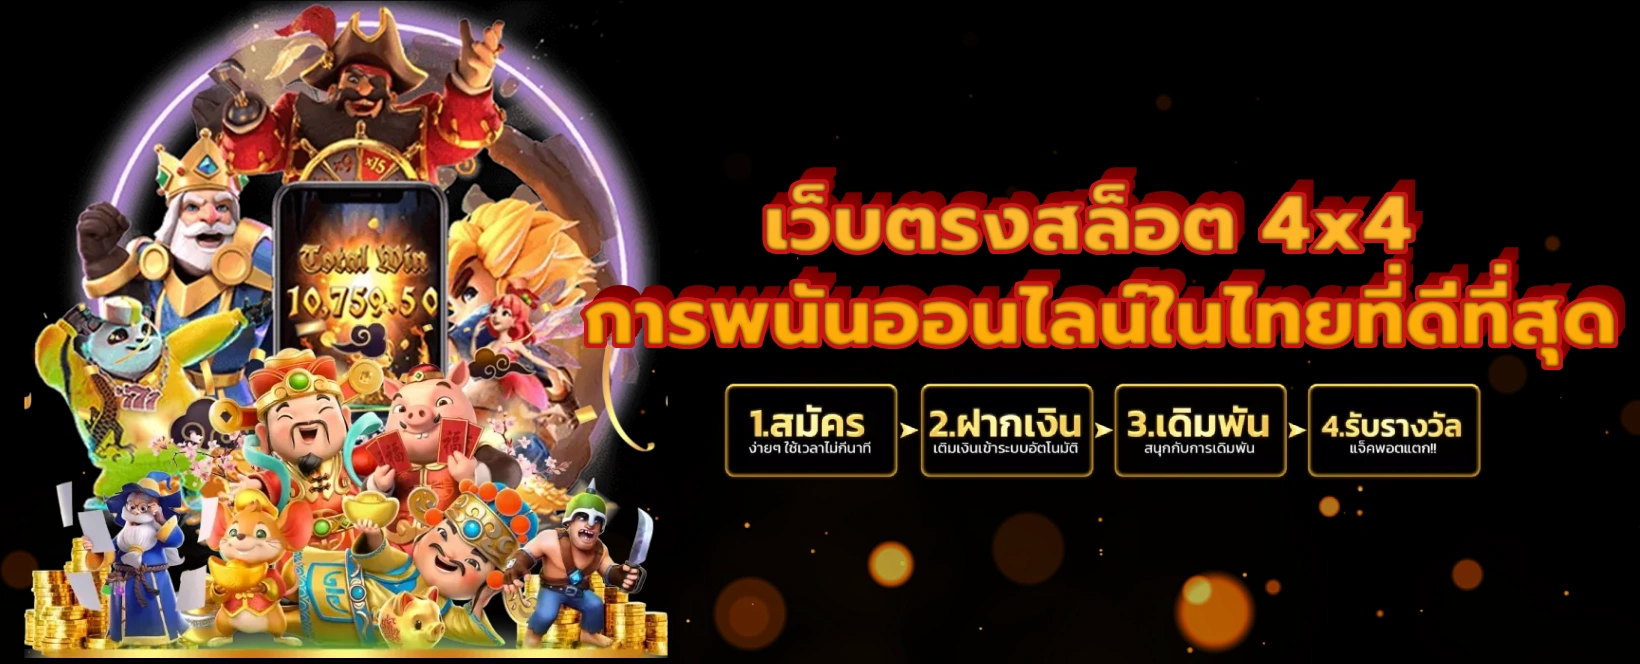 เว็บตรงสล็อต 4x4 การพนันออนไลน์ในไทยที่ดีที่สุด